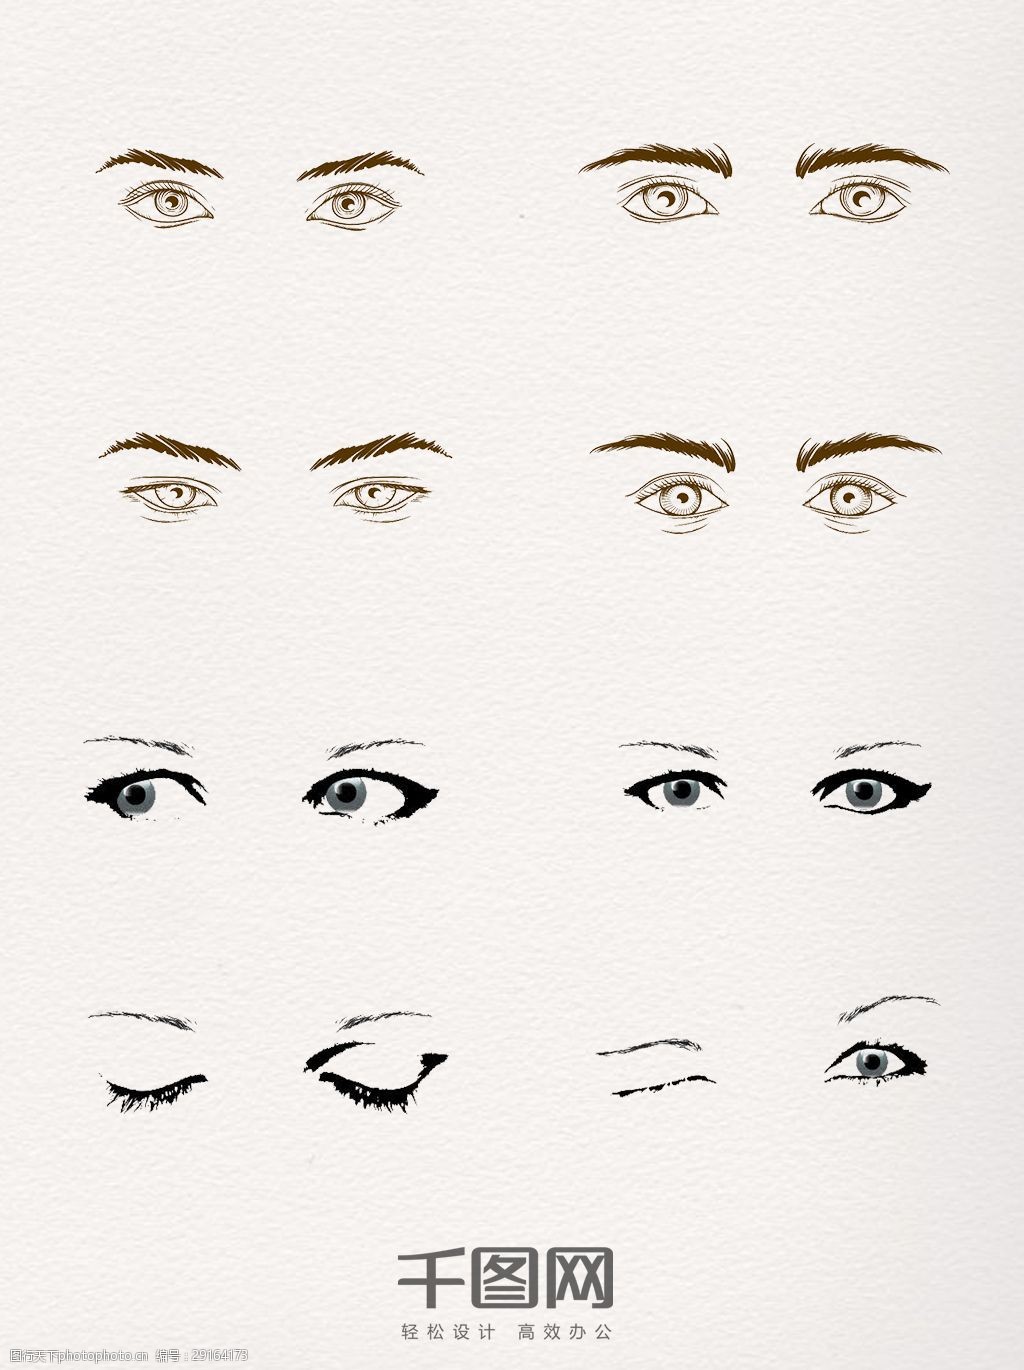 关键词:一组不同神态的眼睛手绘图 五官 眼睛 眼神 神态 手绘 面部